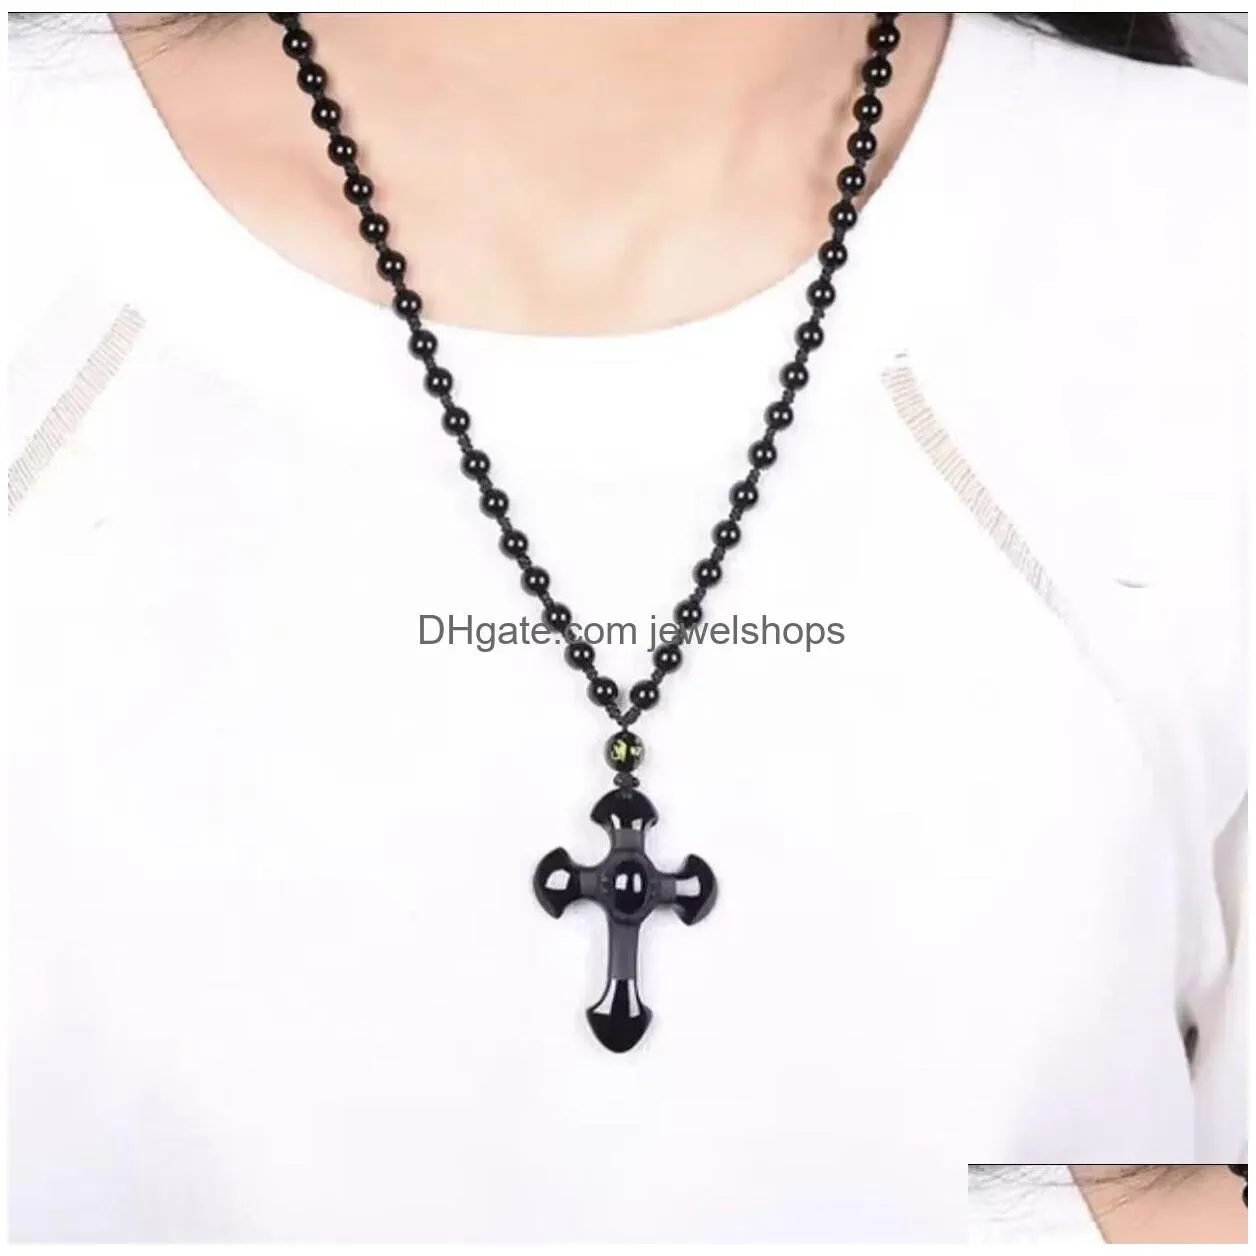 obsidian pendant necklace cross jewelry for men women pendant